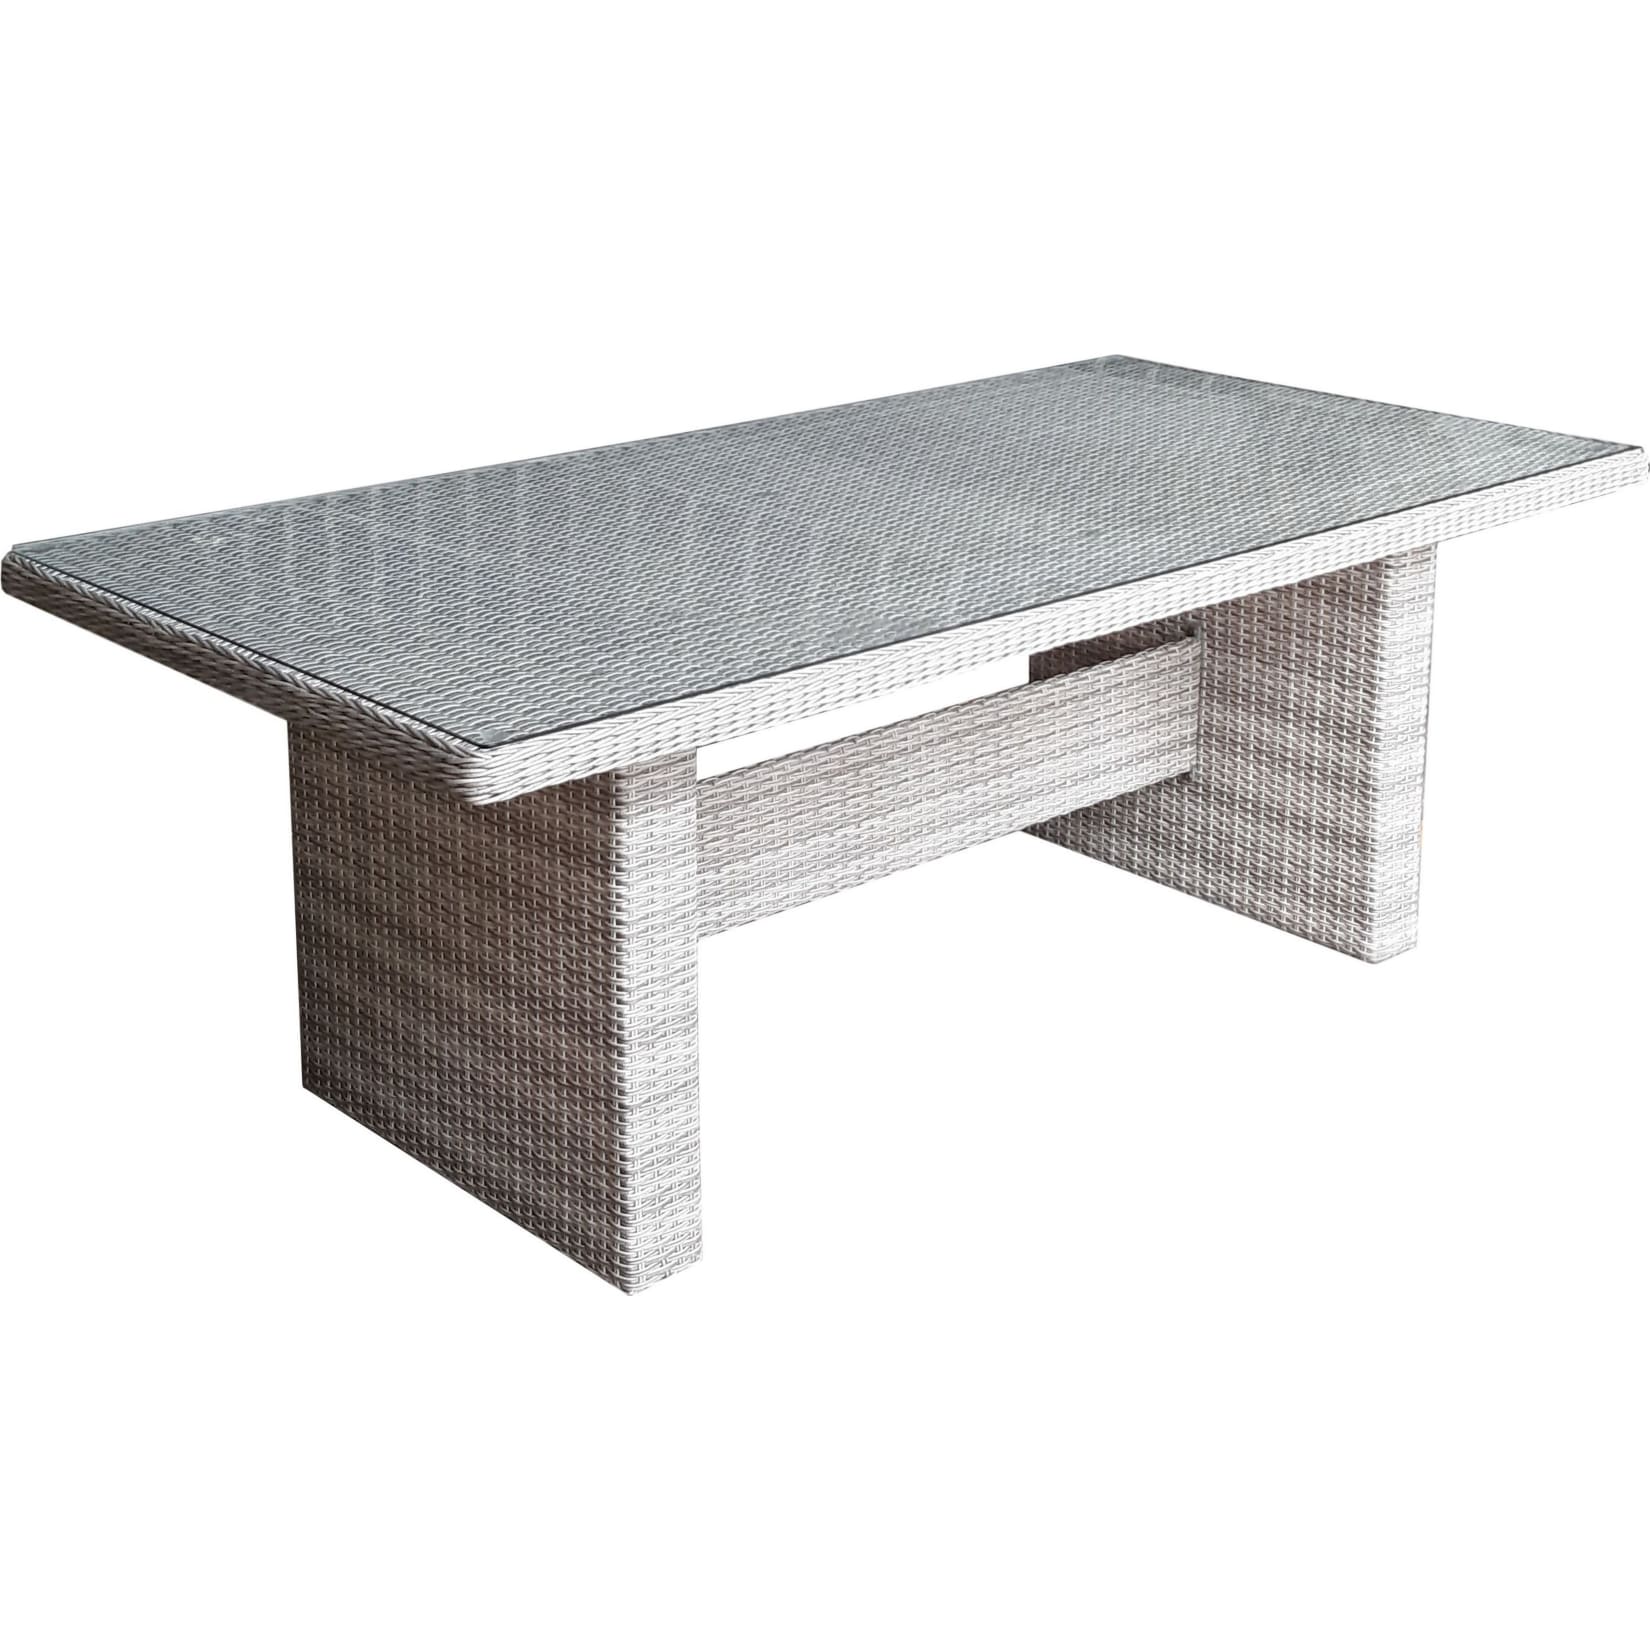 Polyrattan Gartentisch 200x100 Glastisch Esstisch Gartenmöbel Tisch Metall